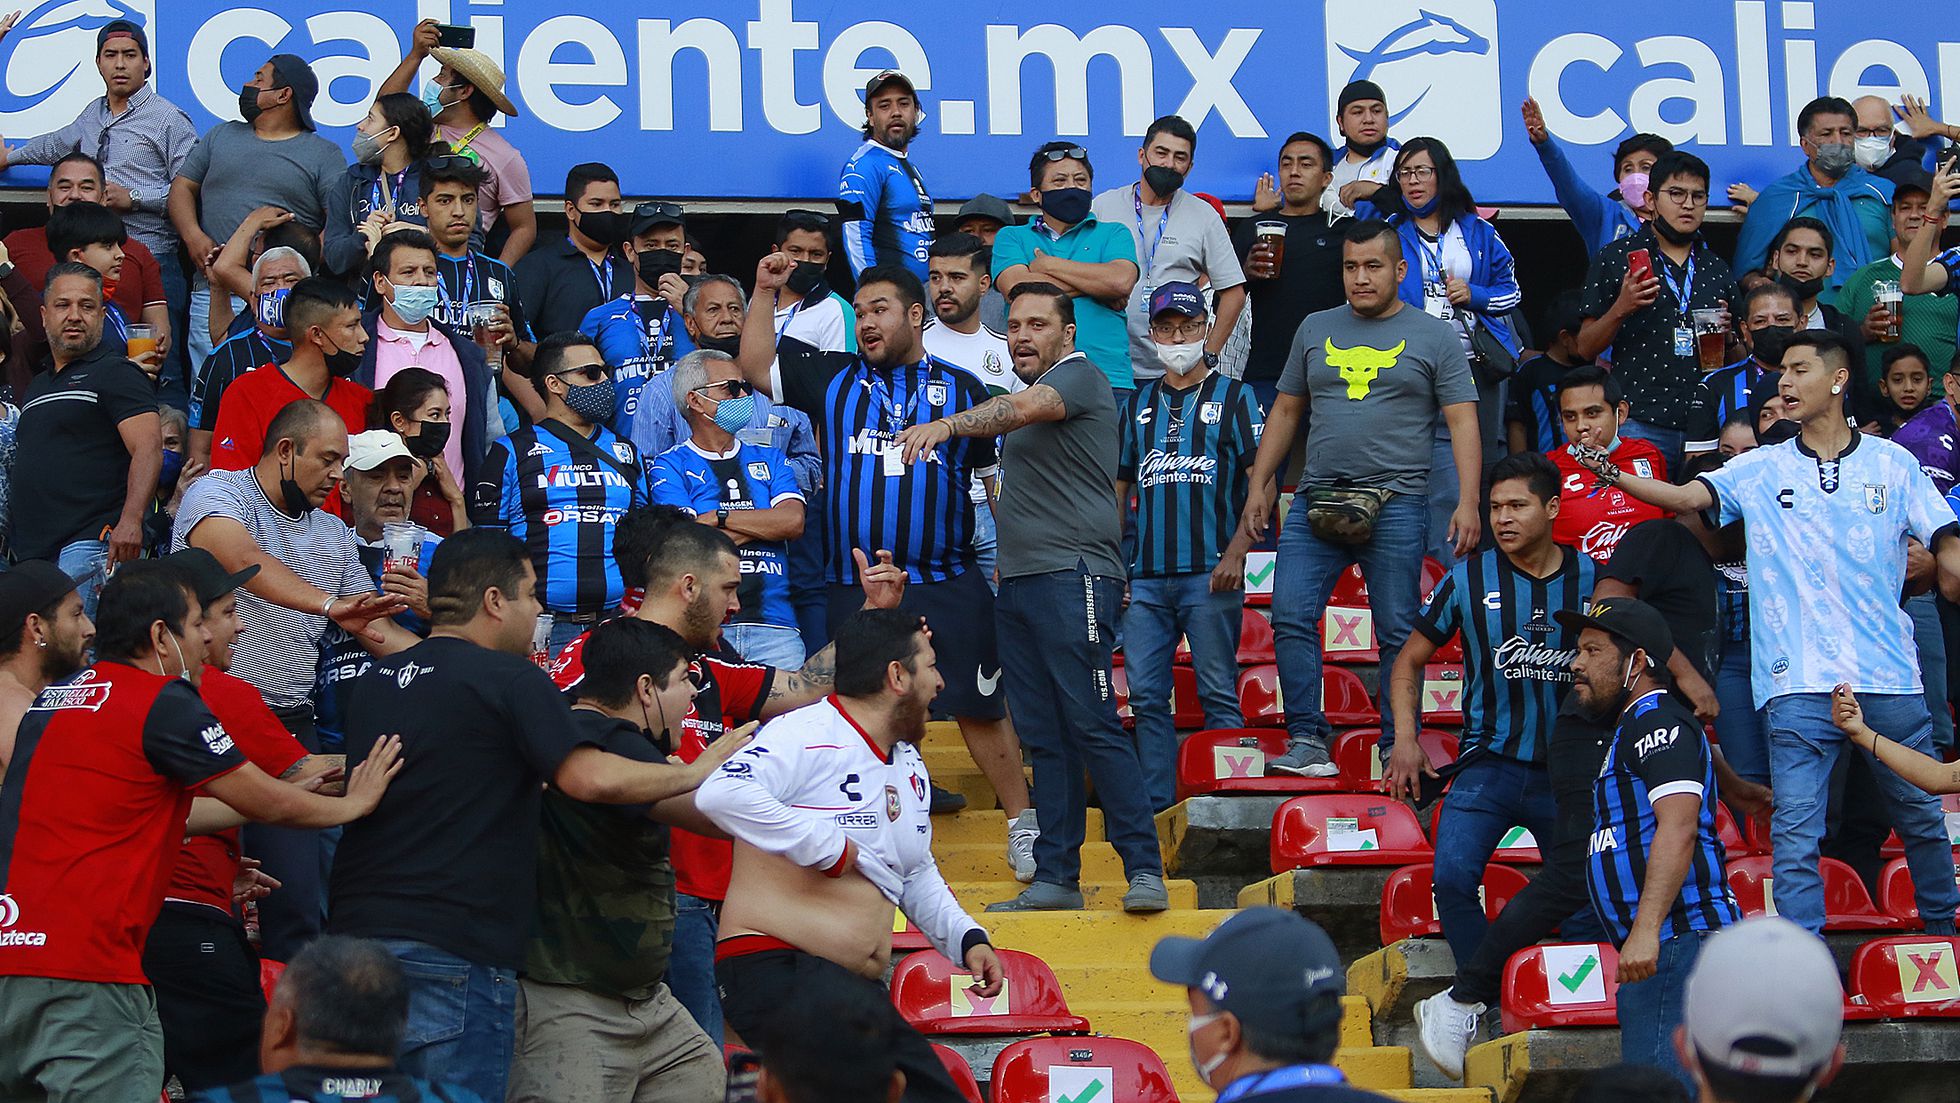 Son 26 los heridos tras actos de violencia en el Estadio Corregidora de Querétaro